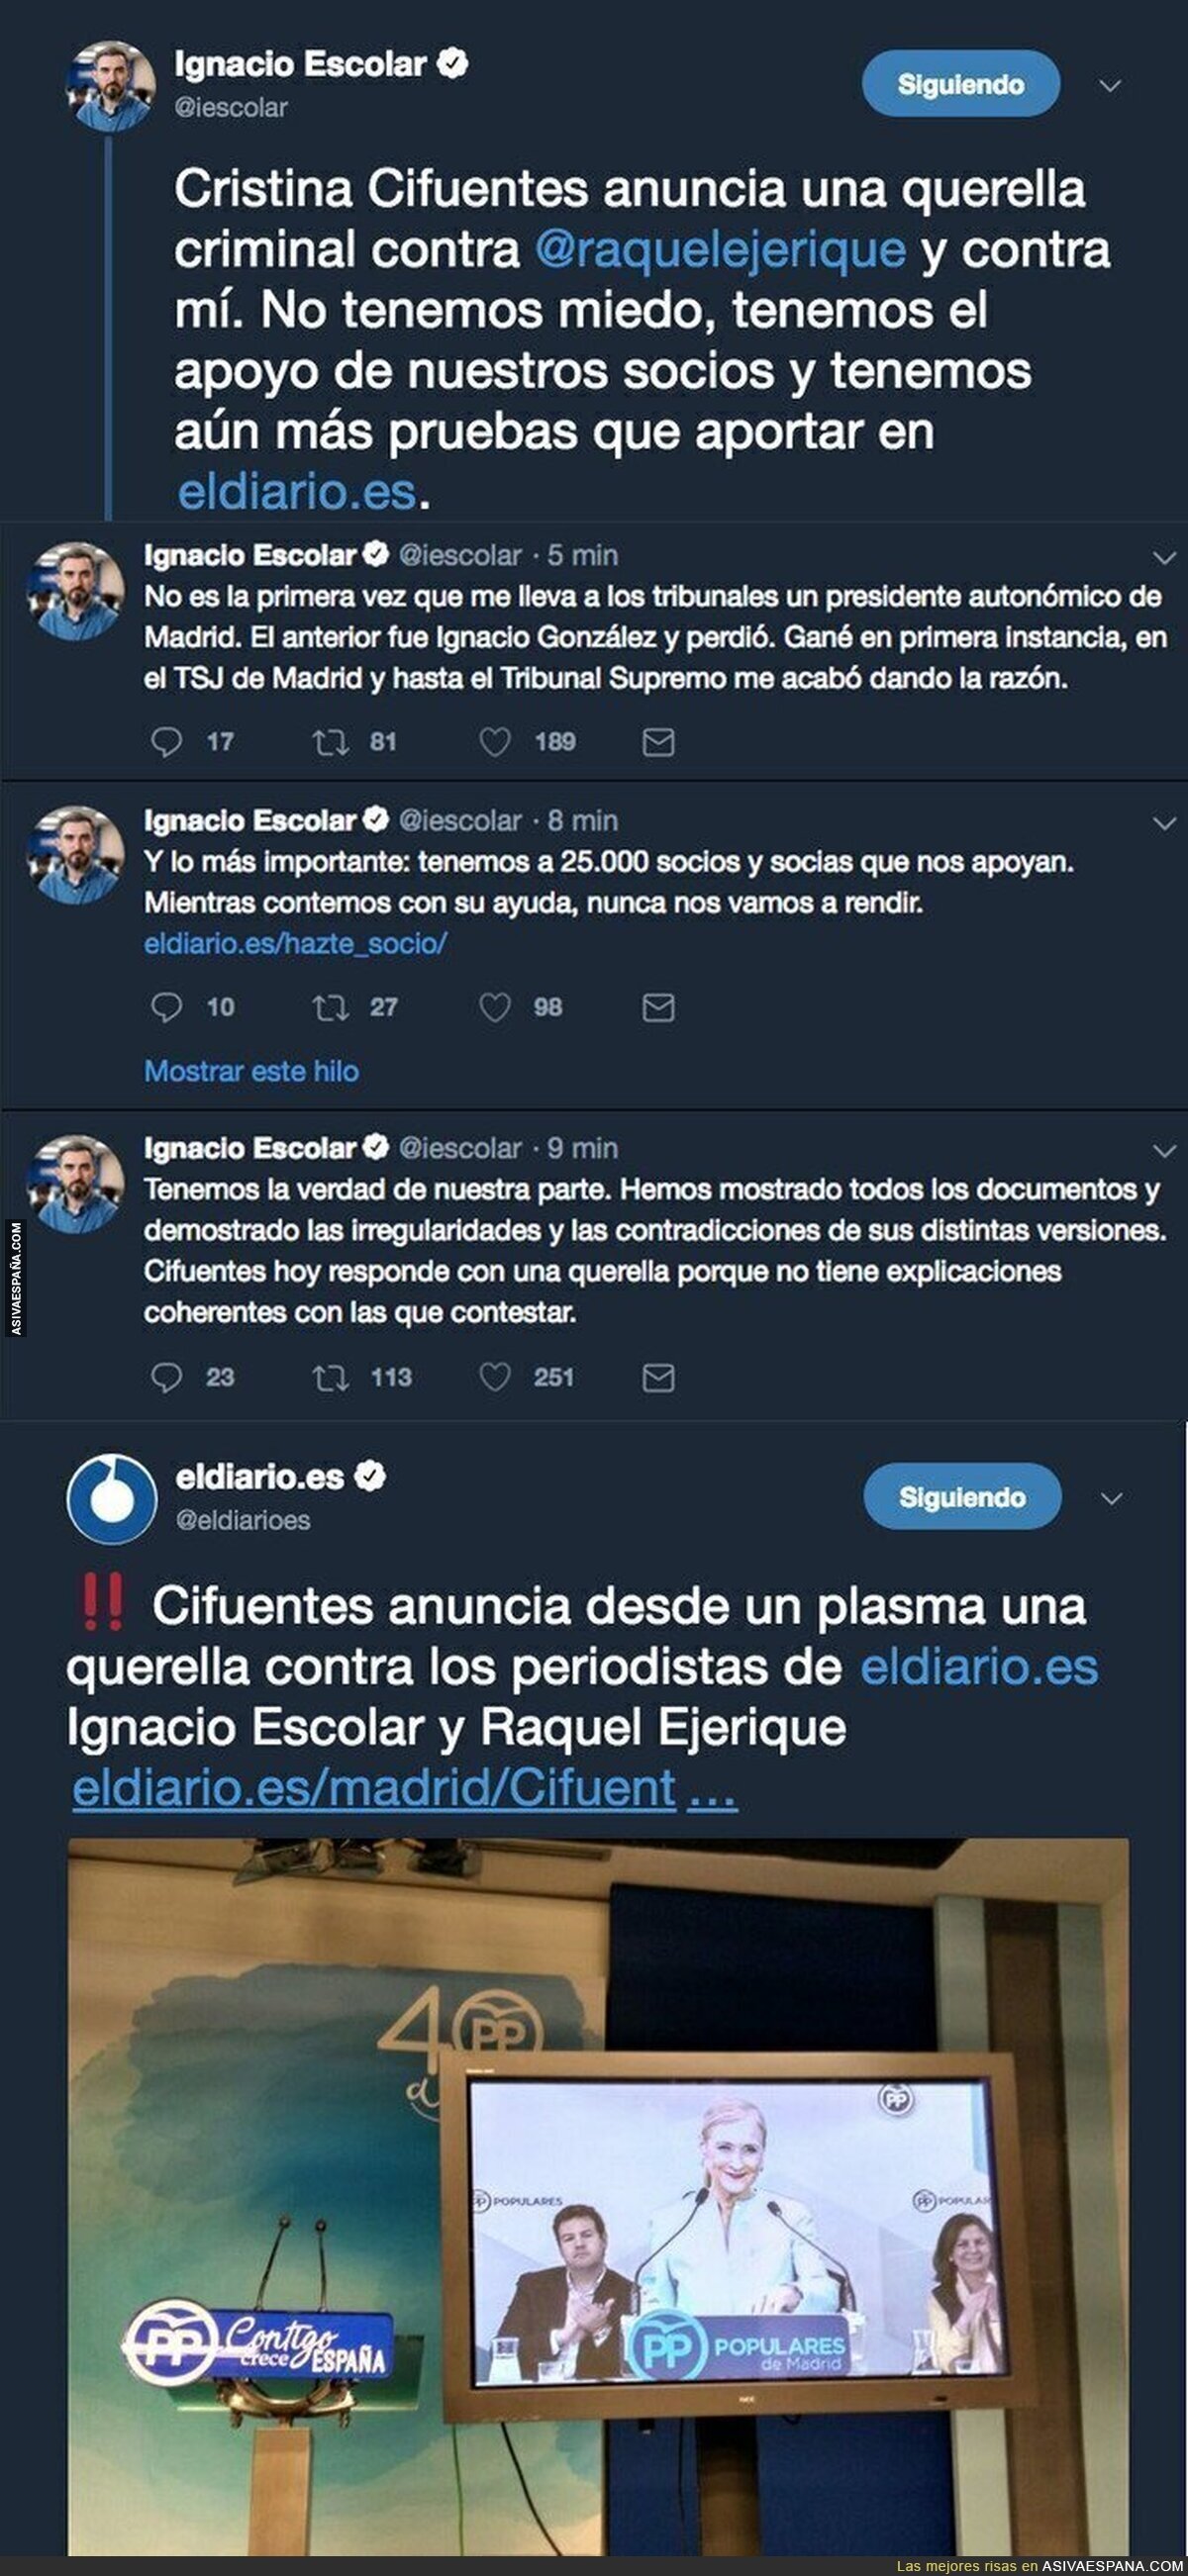 Cristina Cifuentes hace un Rajoy y anuncia una querella a eldiario.es